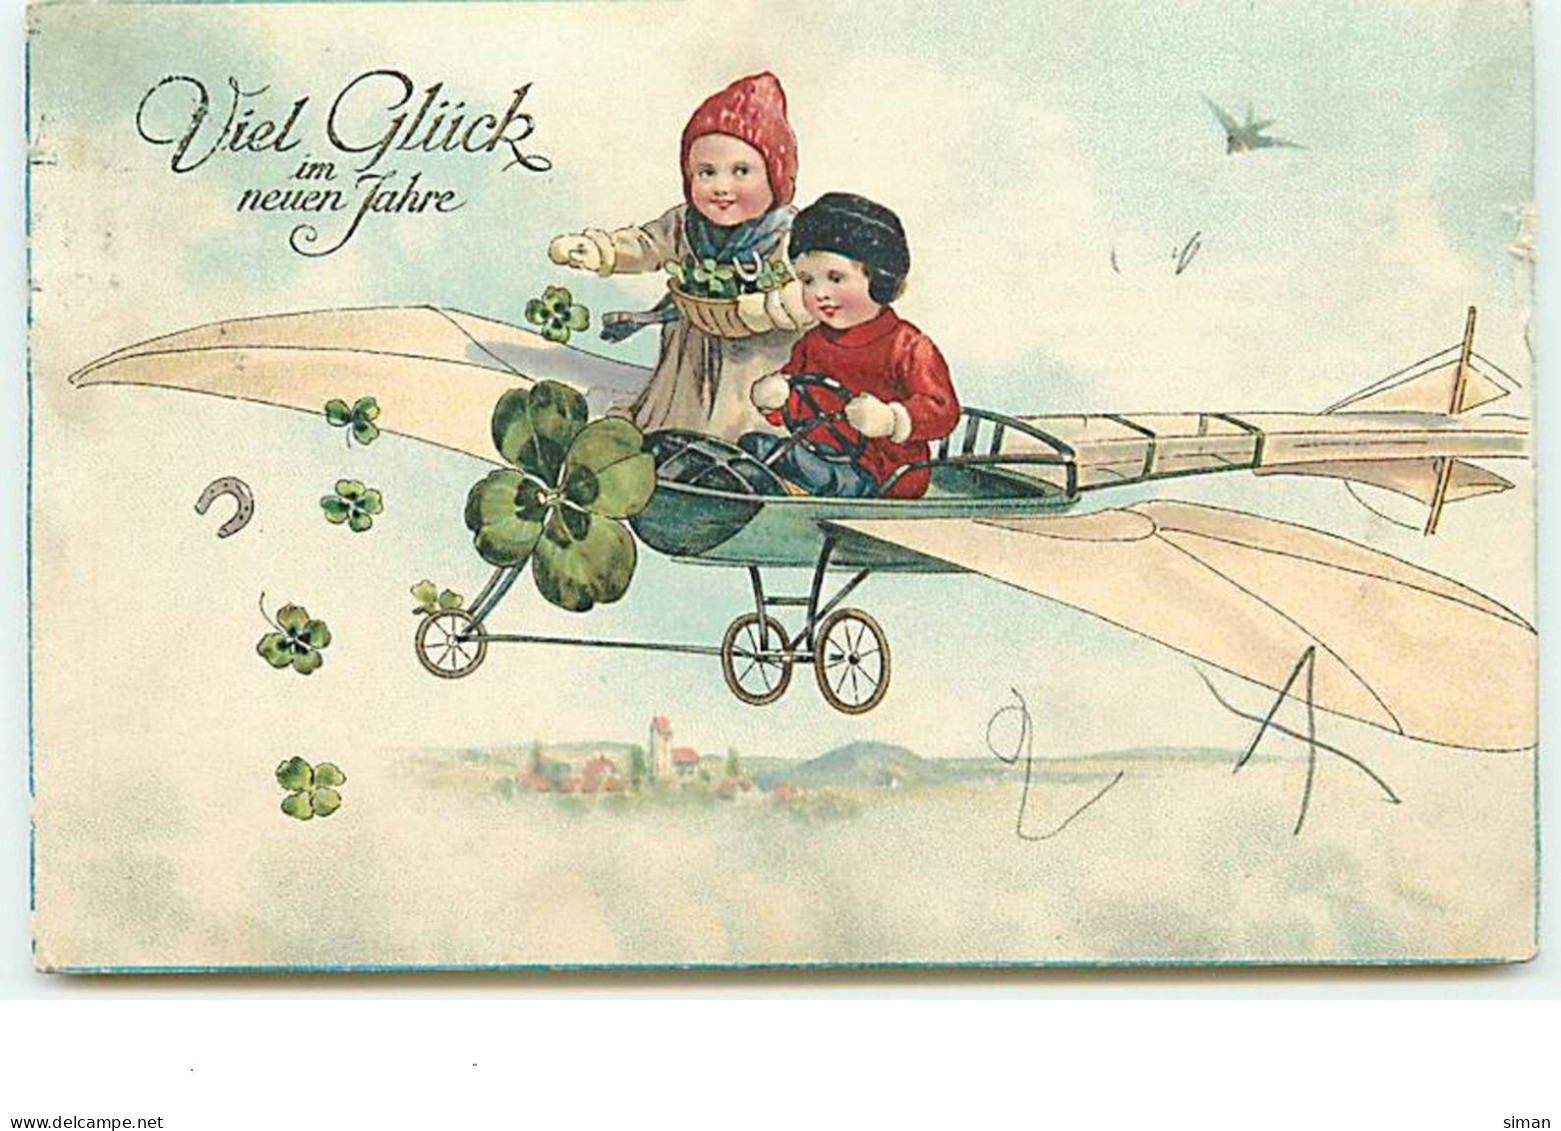 N°13888 - Viel Glück Im Nueun Jahre - Enfants Dans Un Avion, Lançant Des Portes-bonheur - Año Nuevo